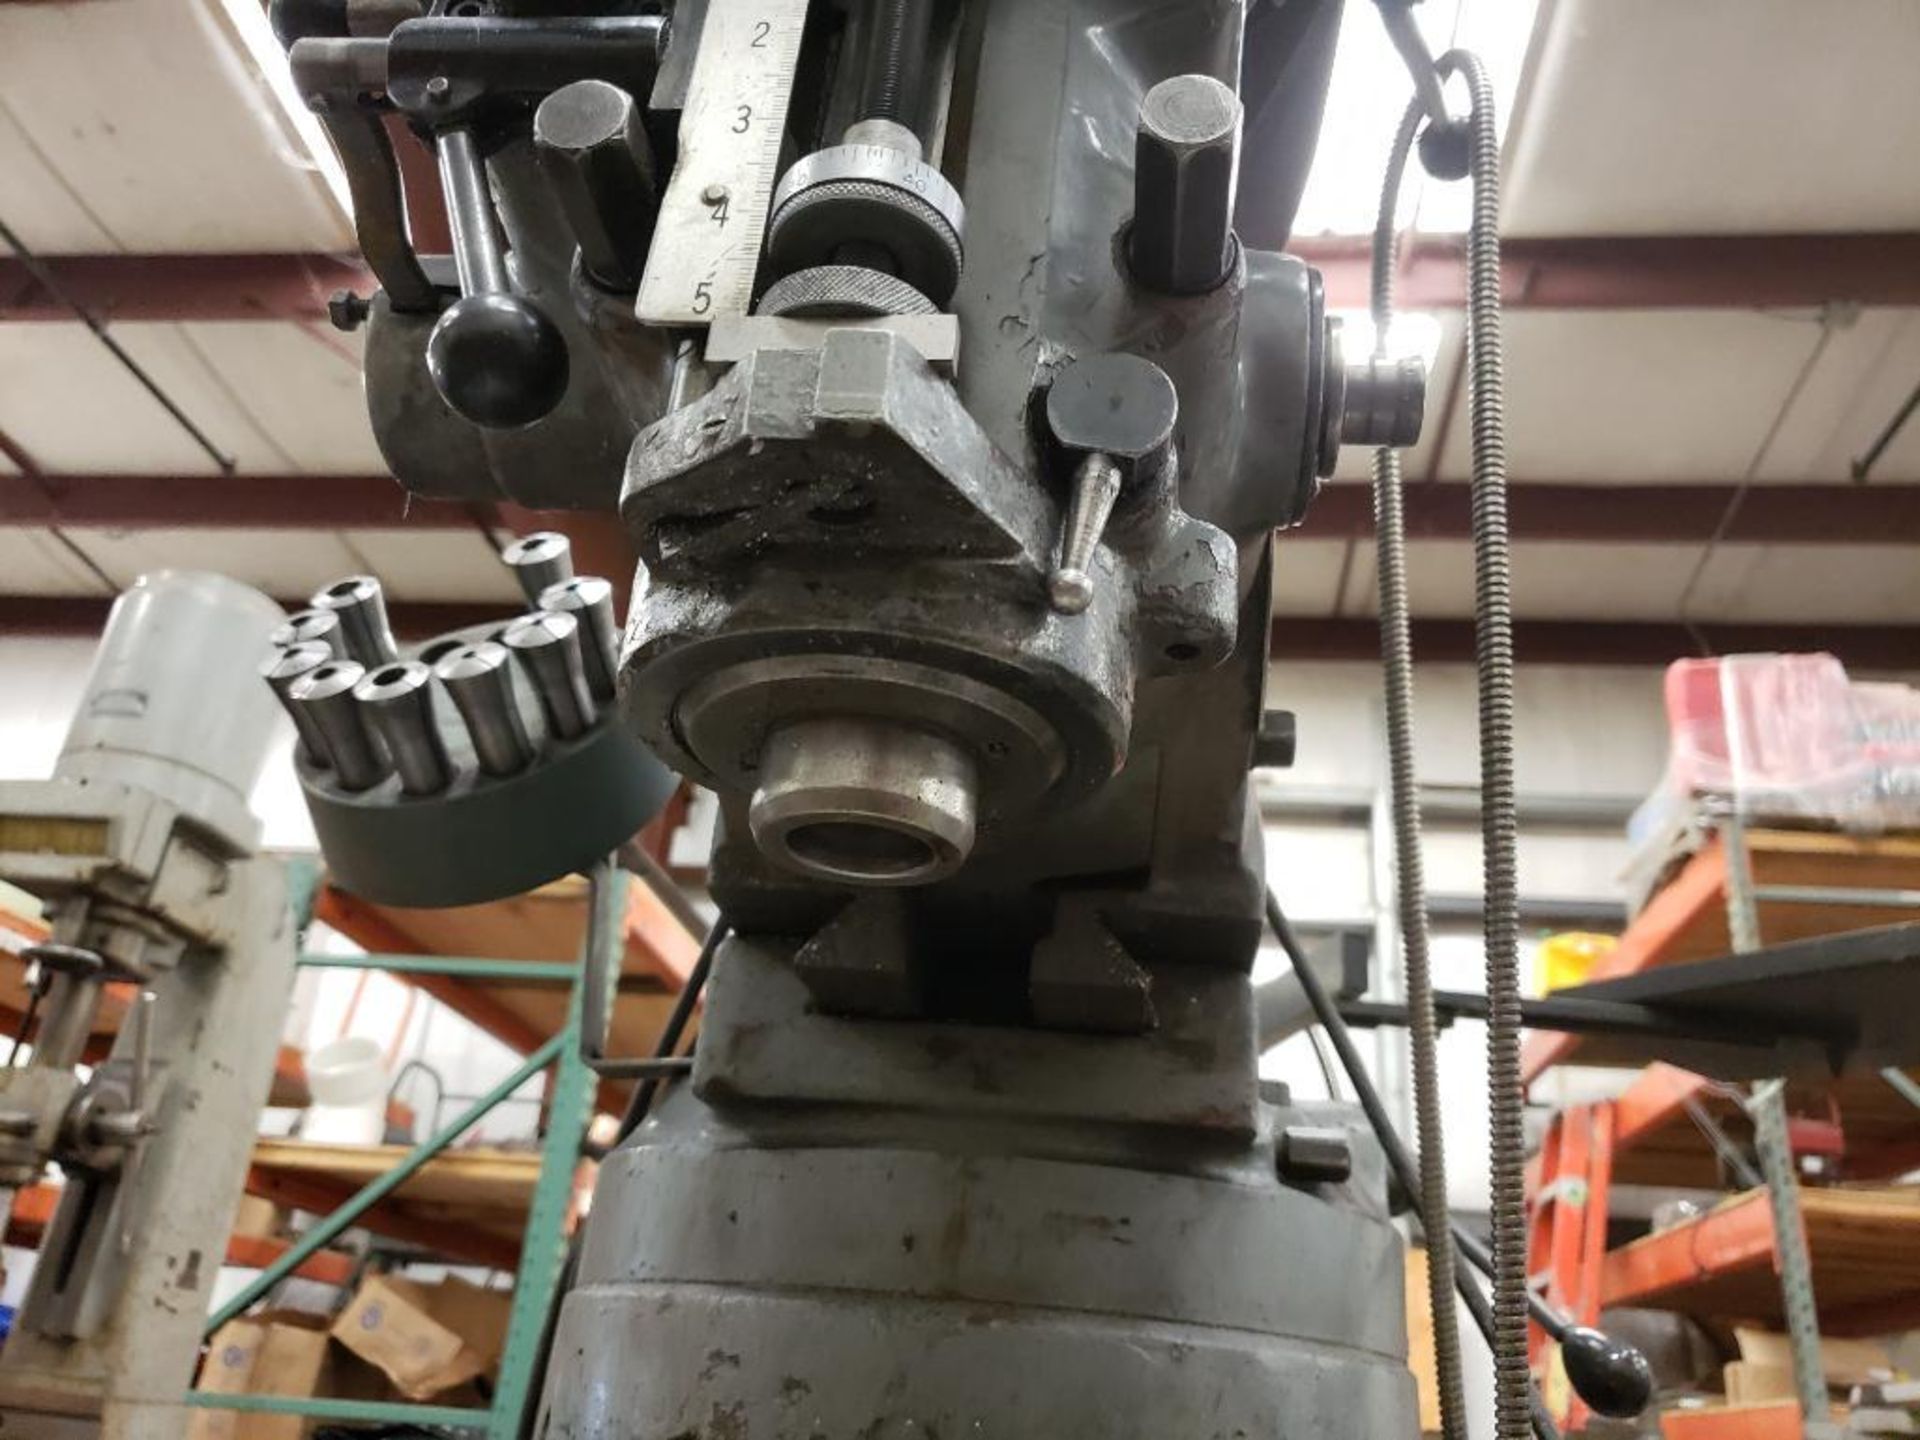 Millport knee mill. Model 3V. Serial number 820548H. - Image 8 of 21